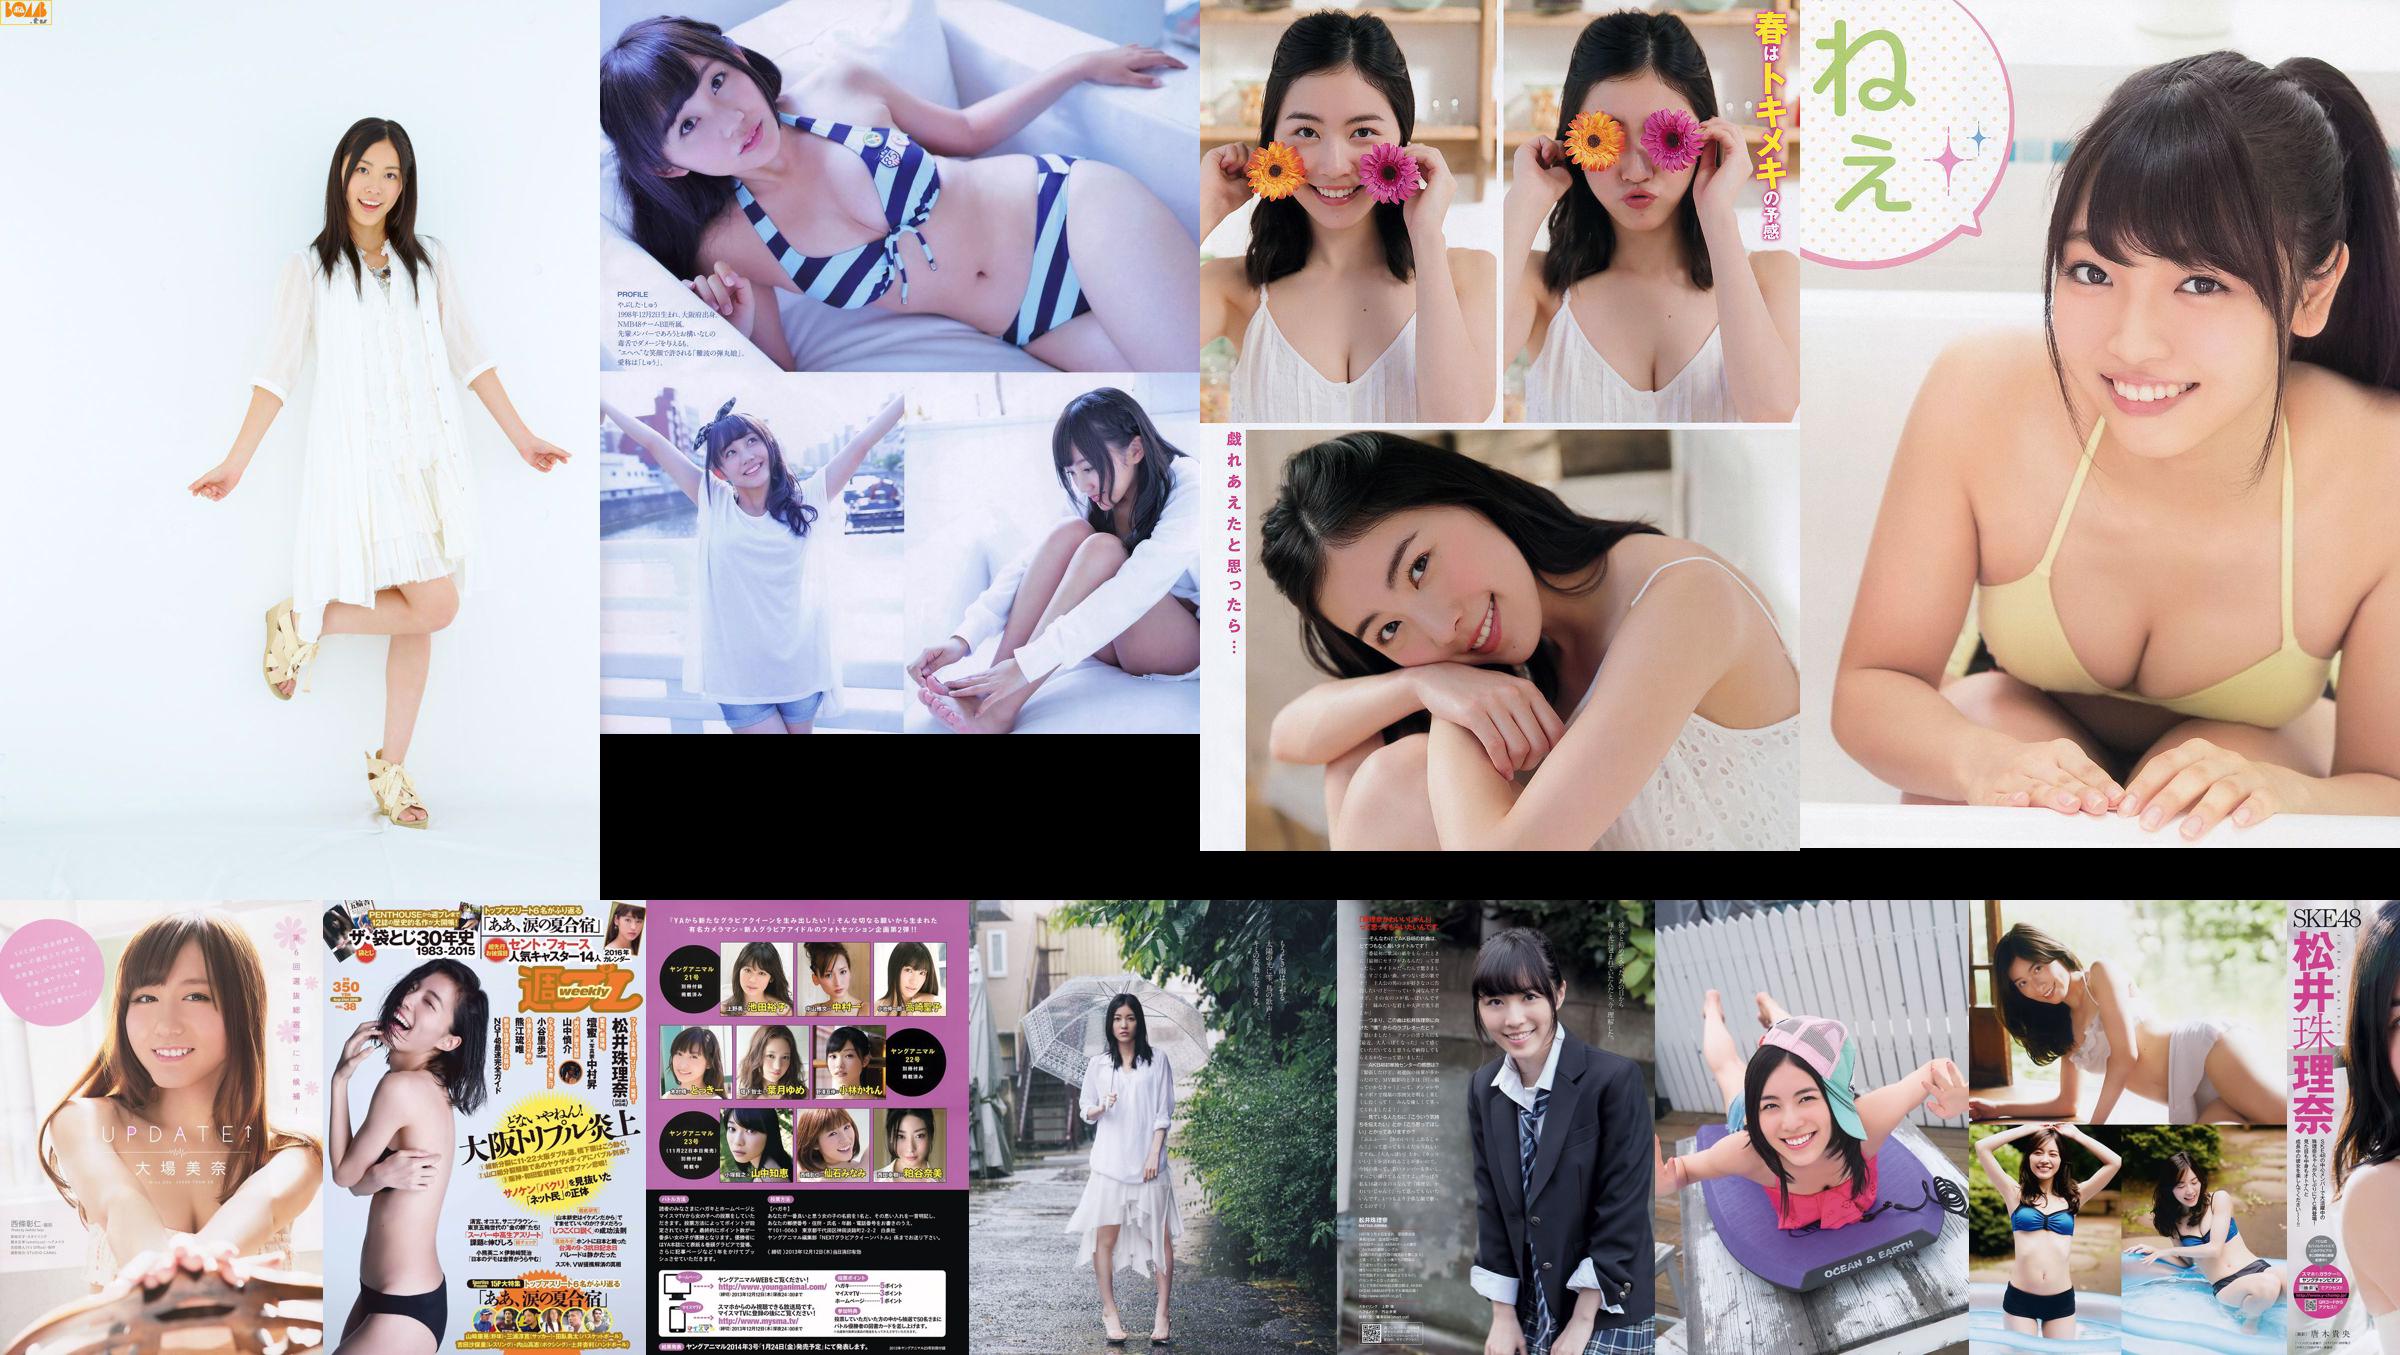 [Young Magazine] Jurina Matsui Yuka Tanaka 2017 No.11 Photograph No.6e95bd Page 1